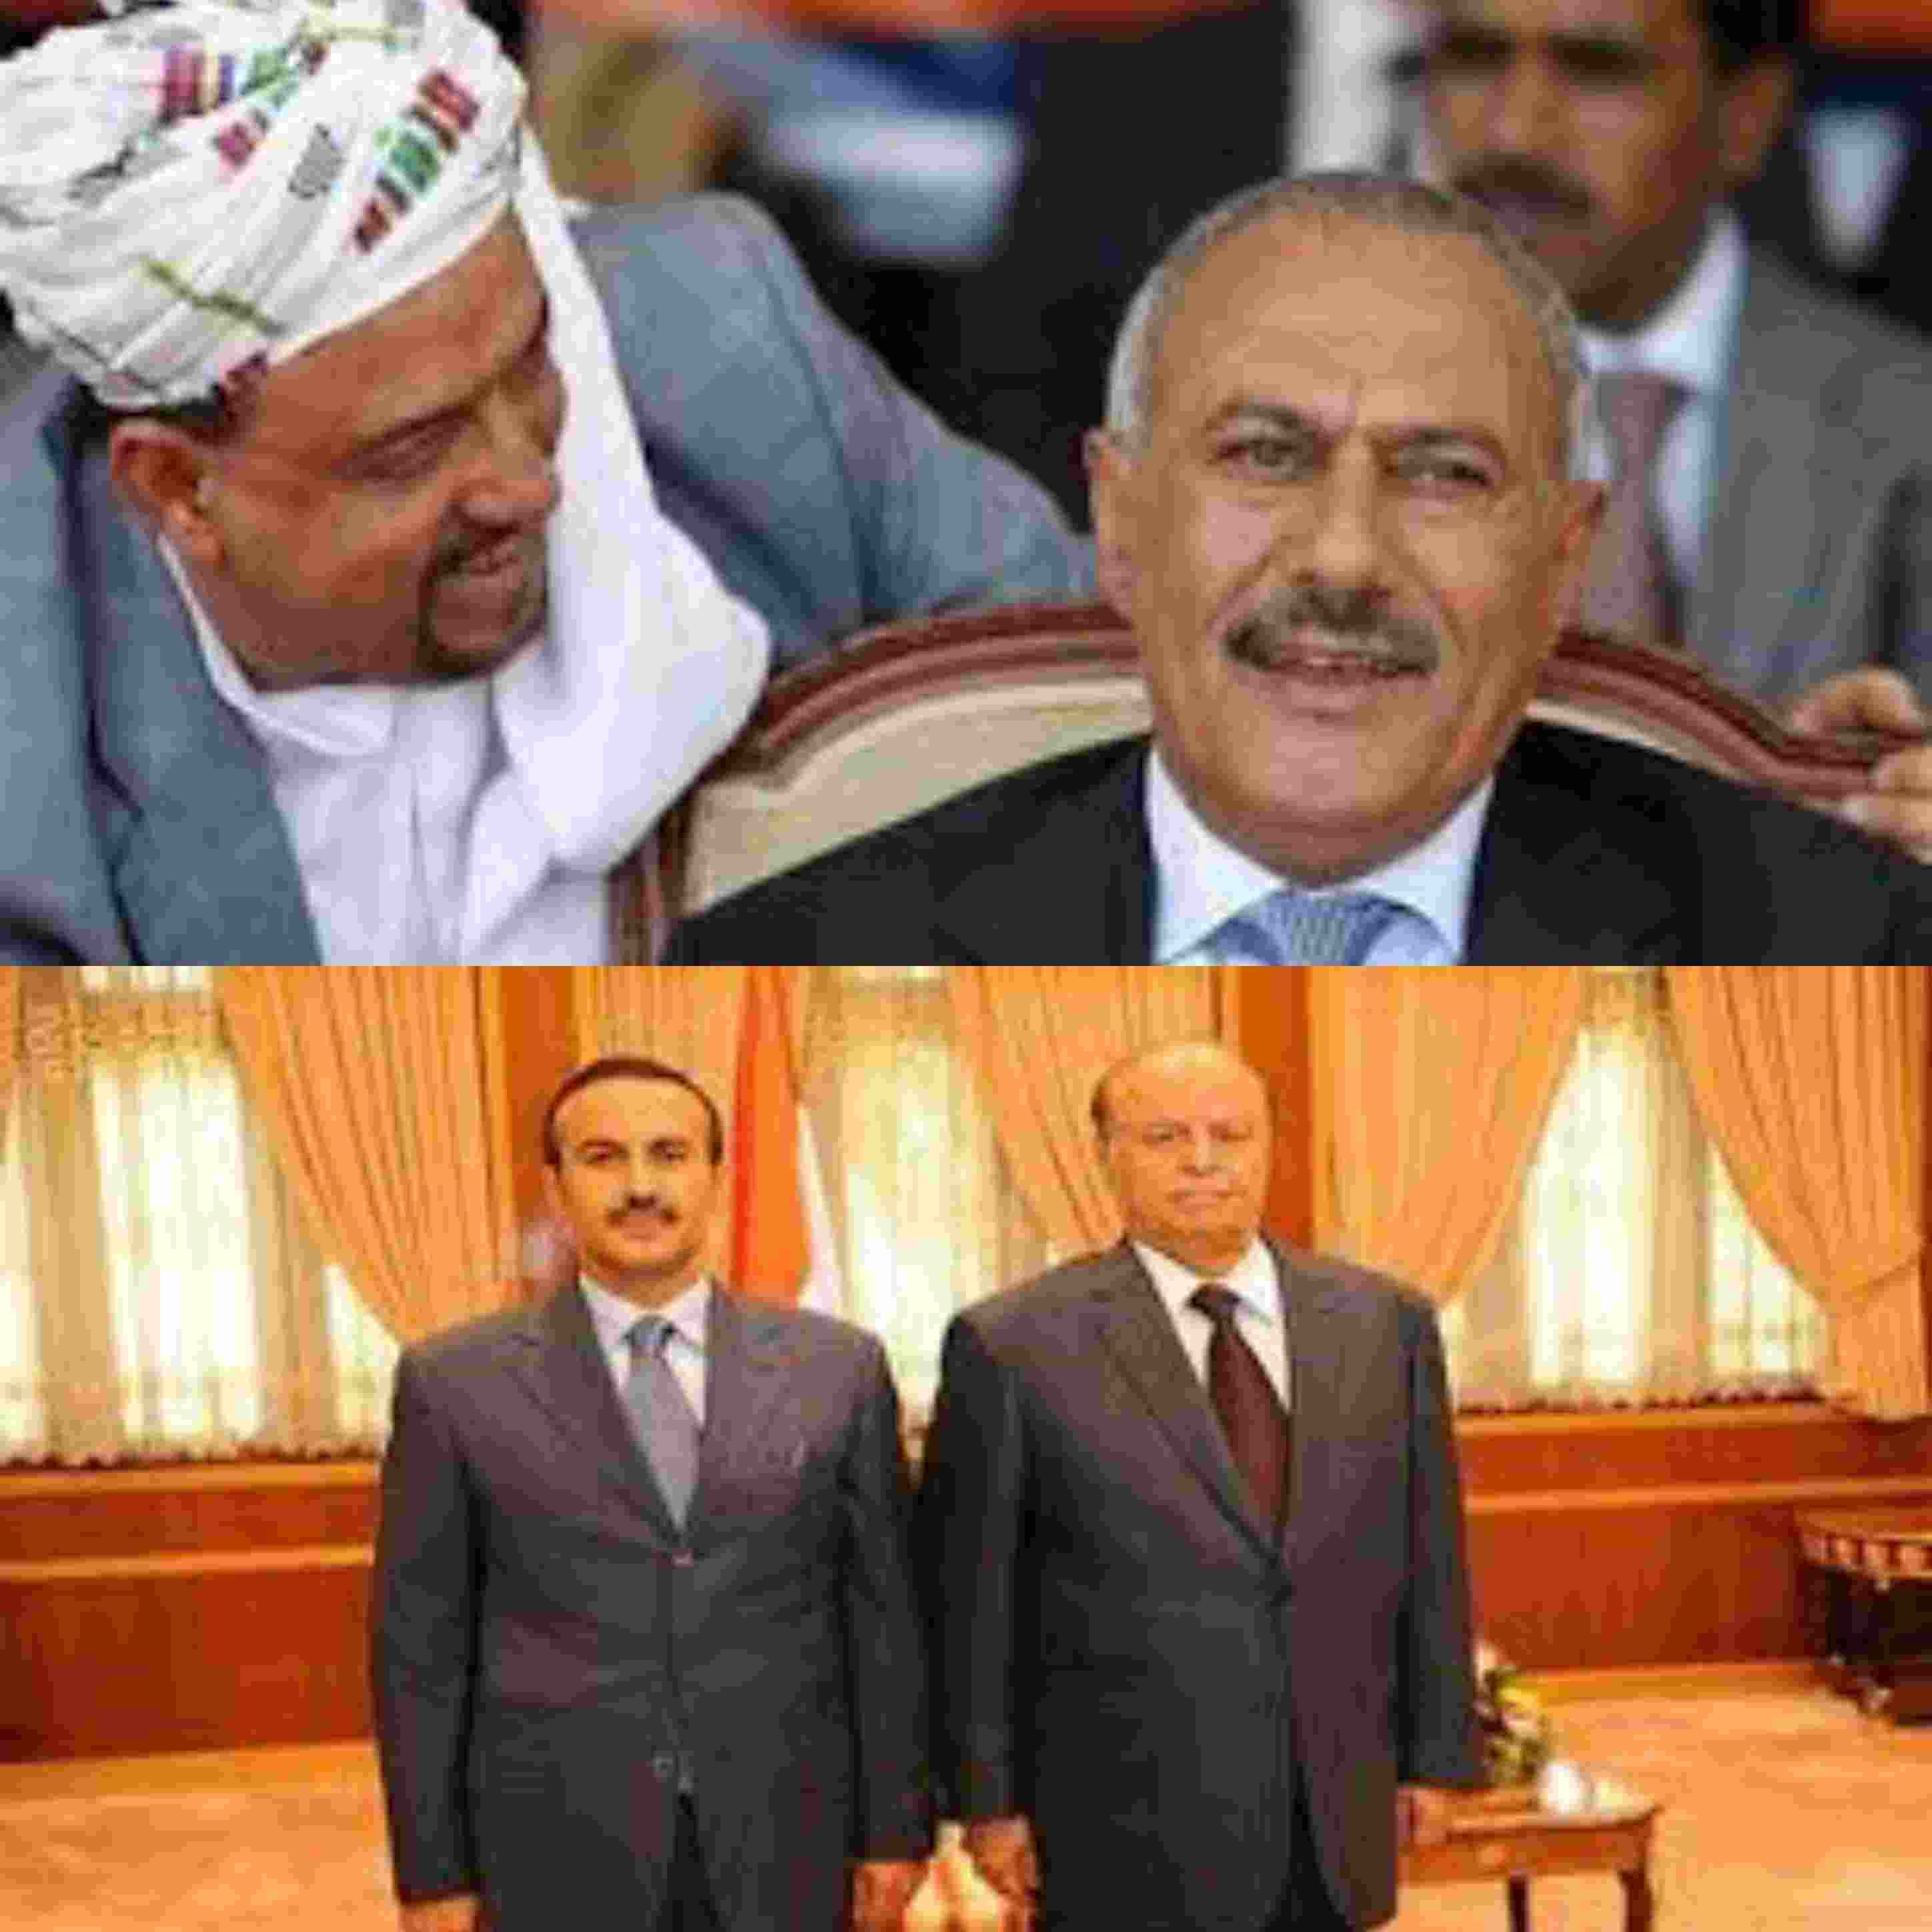 رئيس برلمان اليمن يكشف شروط الرئيس واولاده لرفع العقوبات عن نجل الرئيس الأسبق احمد عبدالله صالح ..!!